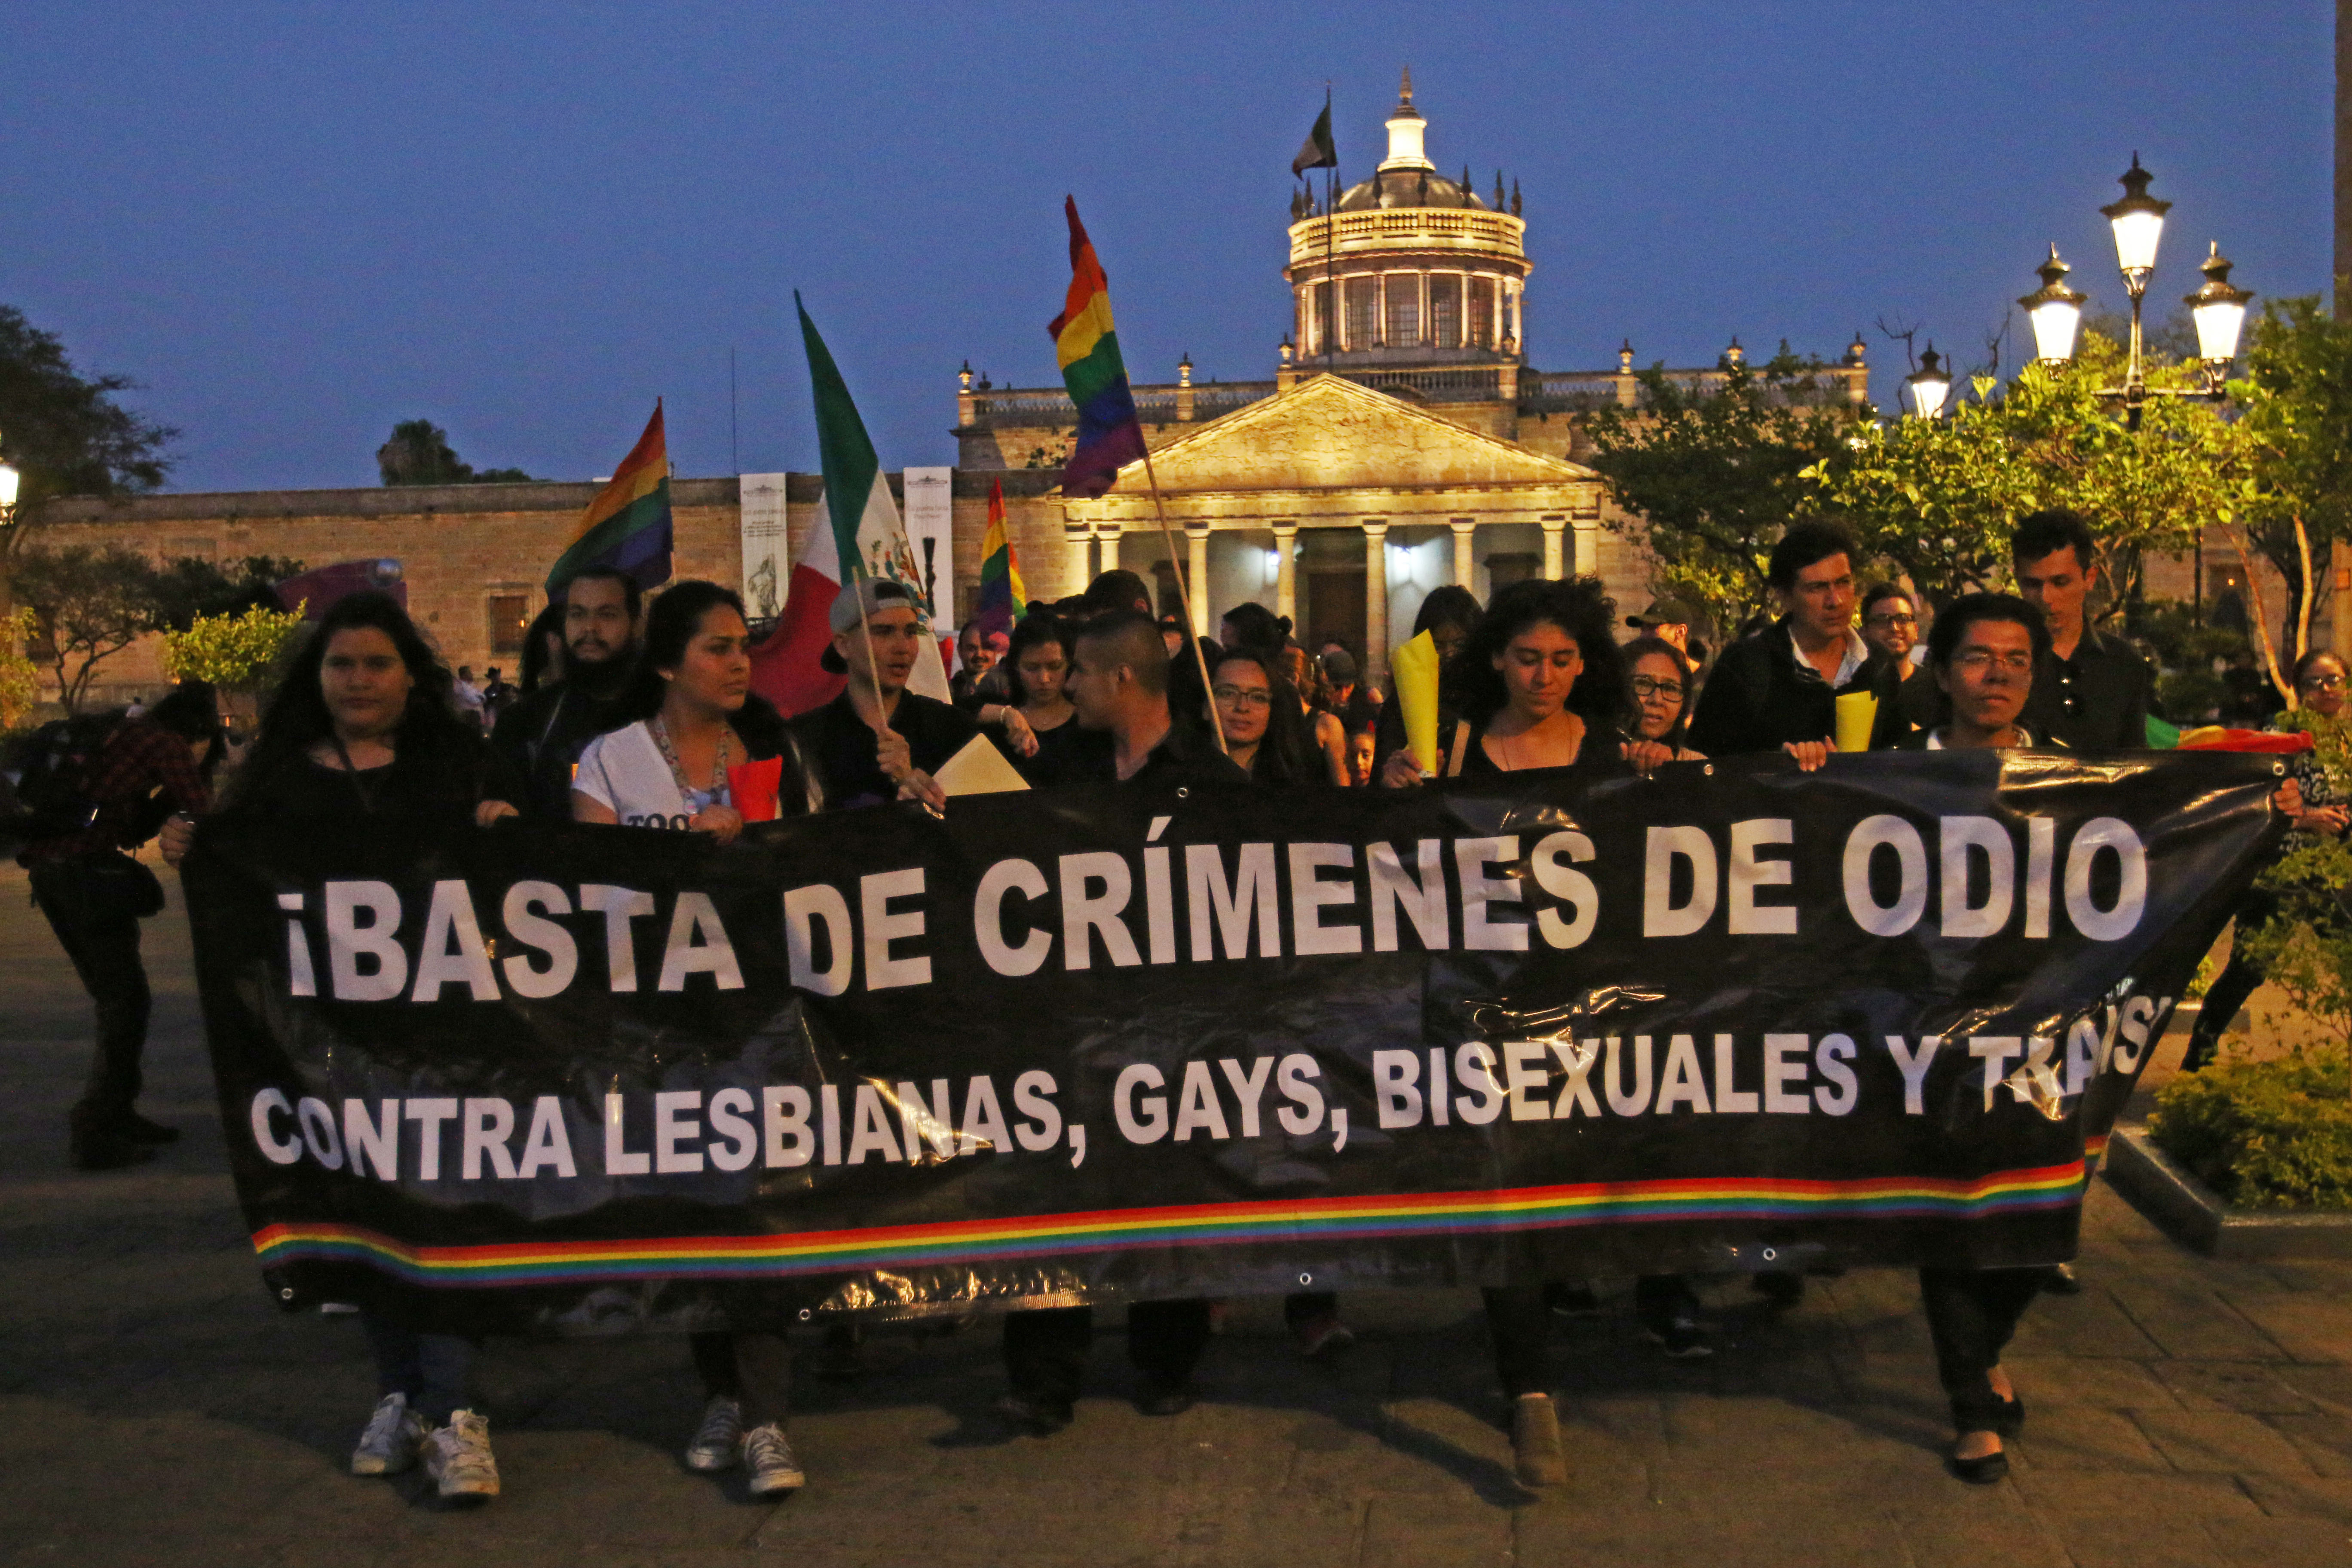 GUADALAJARA, JALISCO, 17MAYO2016.- Esta noche para conmemorar el día nacional de la lucha contra la homofobia, decenas de personas de la comunidad LGBT del estado, realizaron una marcha denominada del “Silencio”, saliendo del Instituto Cultural Cabañas hacia Plaza de Armas.FOTO : FERNANDO CARRANZA GARCIA / CUARTOSCURO.COM